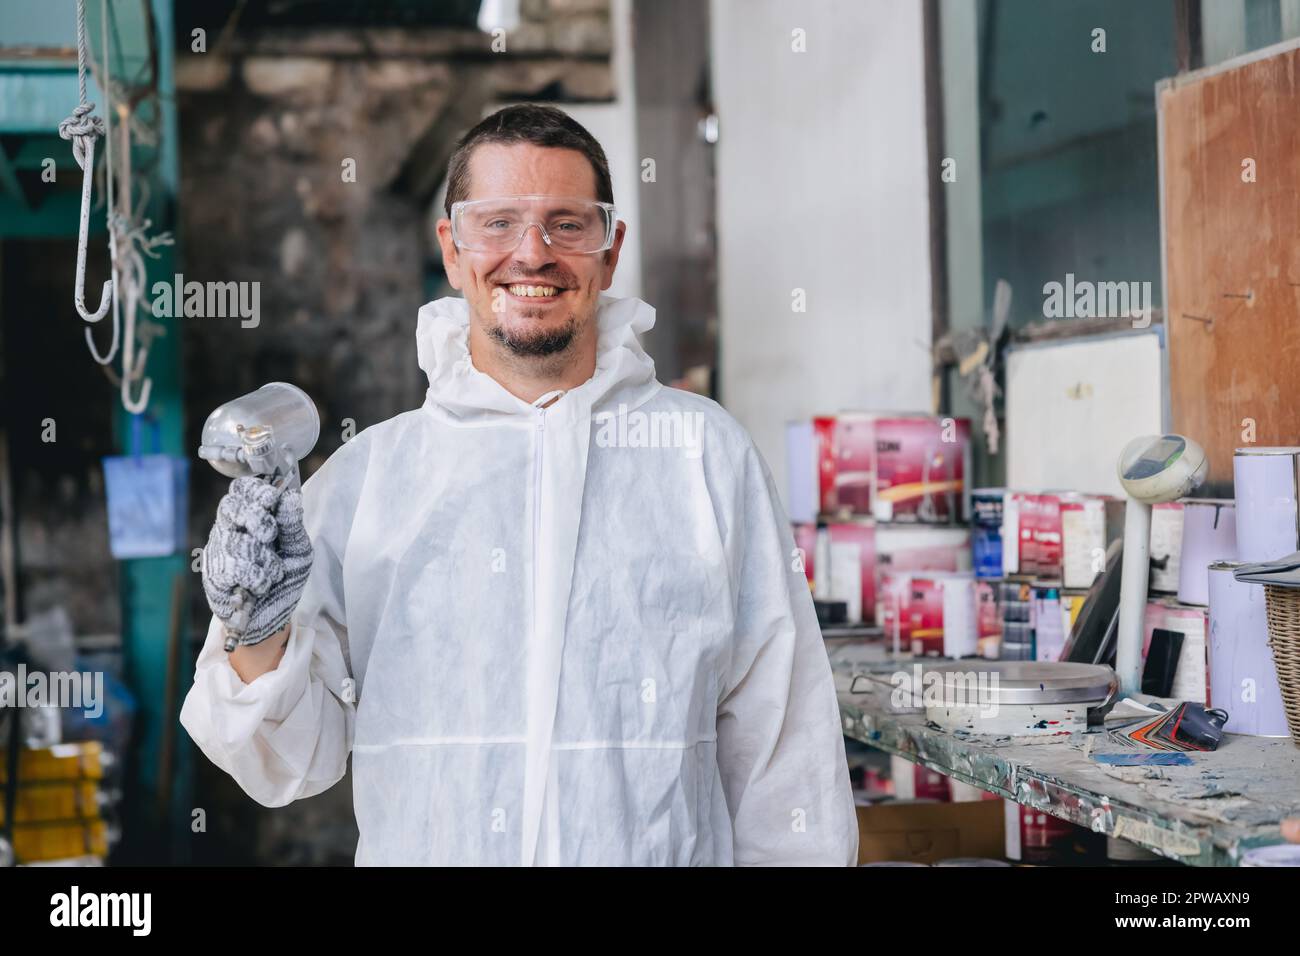 Porträt männlicher Garagenmaler Autolackierung Farbkittel Teamangestellter glücklich lächelnd Stockfoto